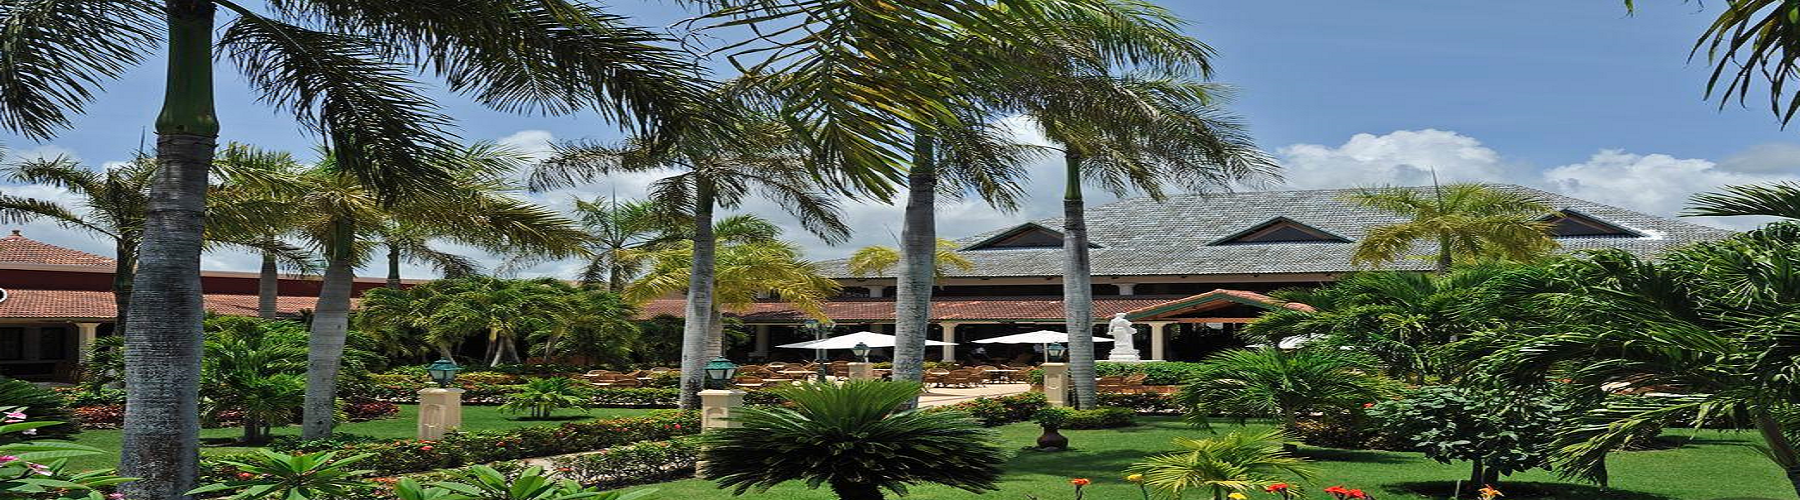 Забронировать отель Luxury Bahia Principe Ambar 5*